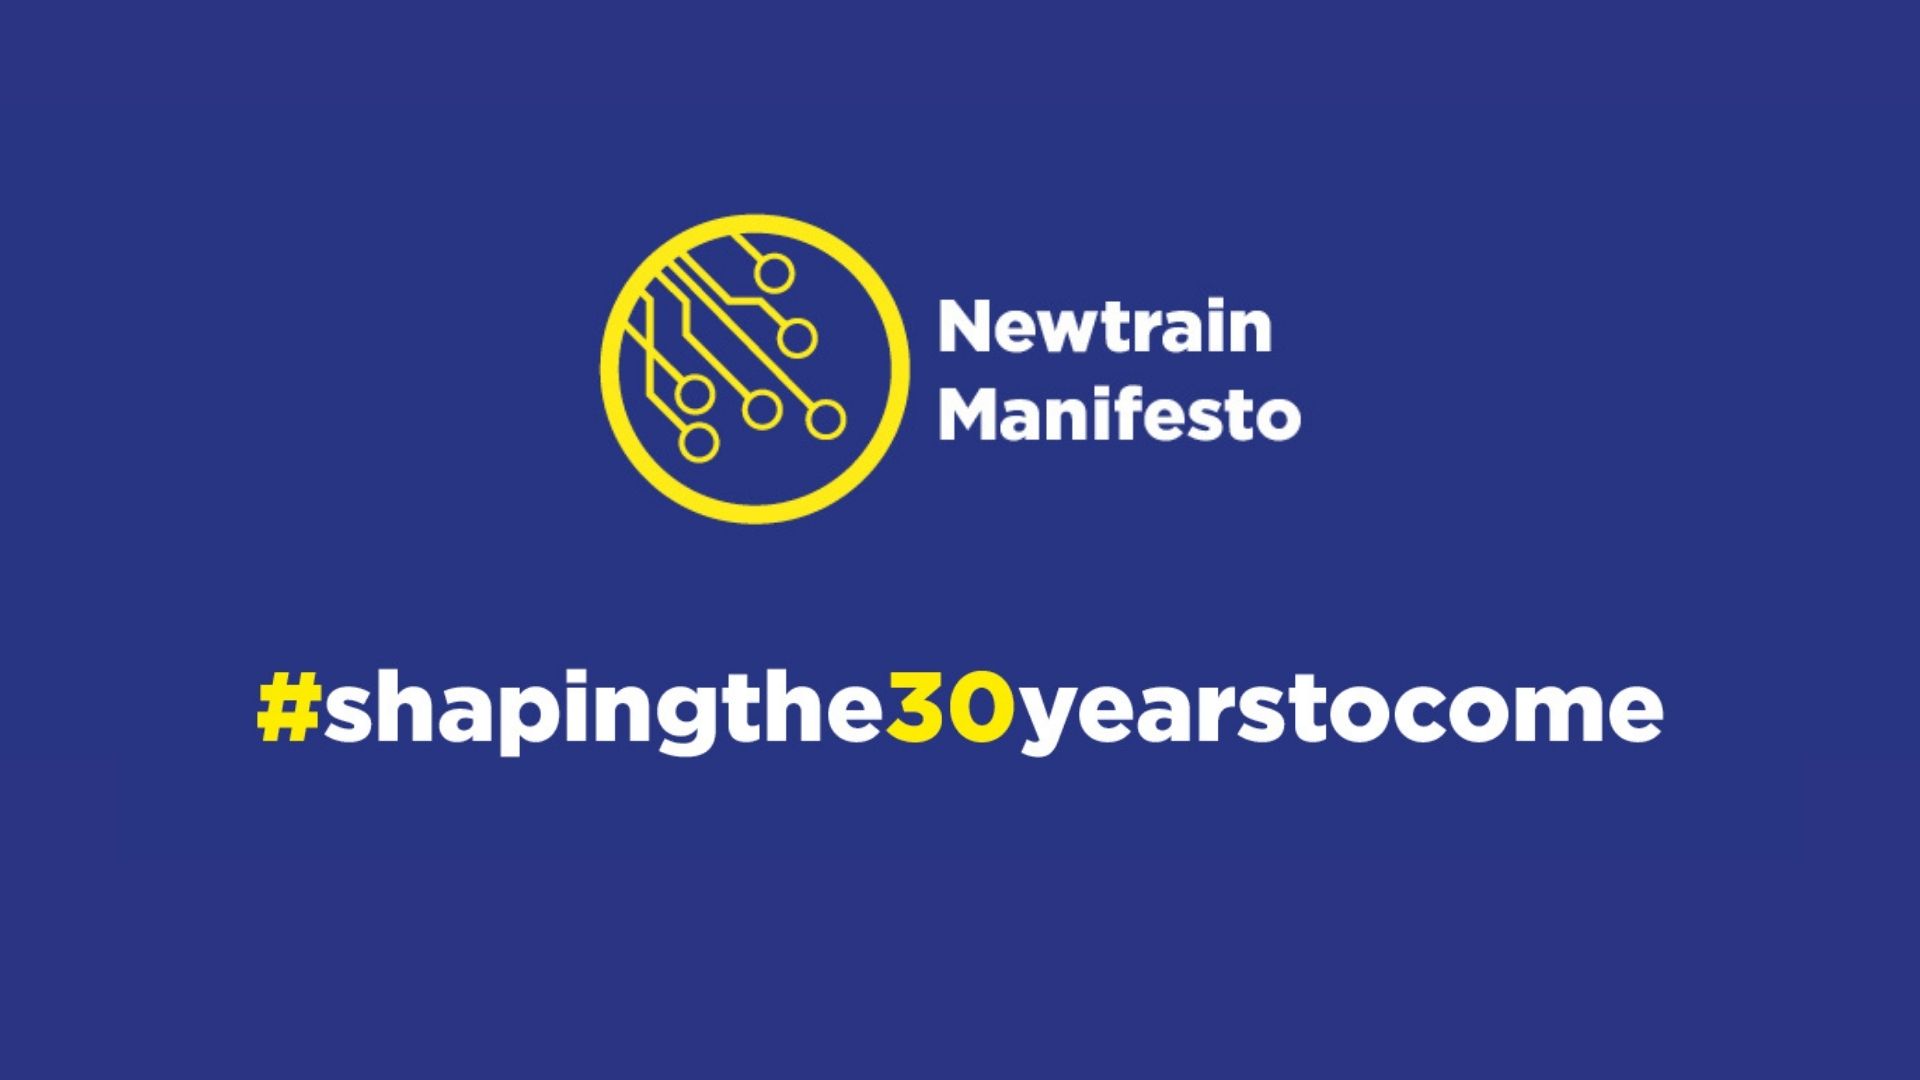 The Newtrain Manifesto